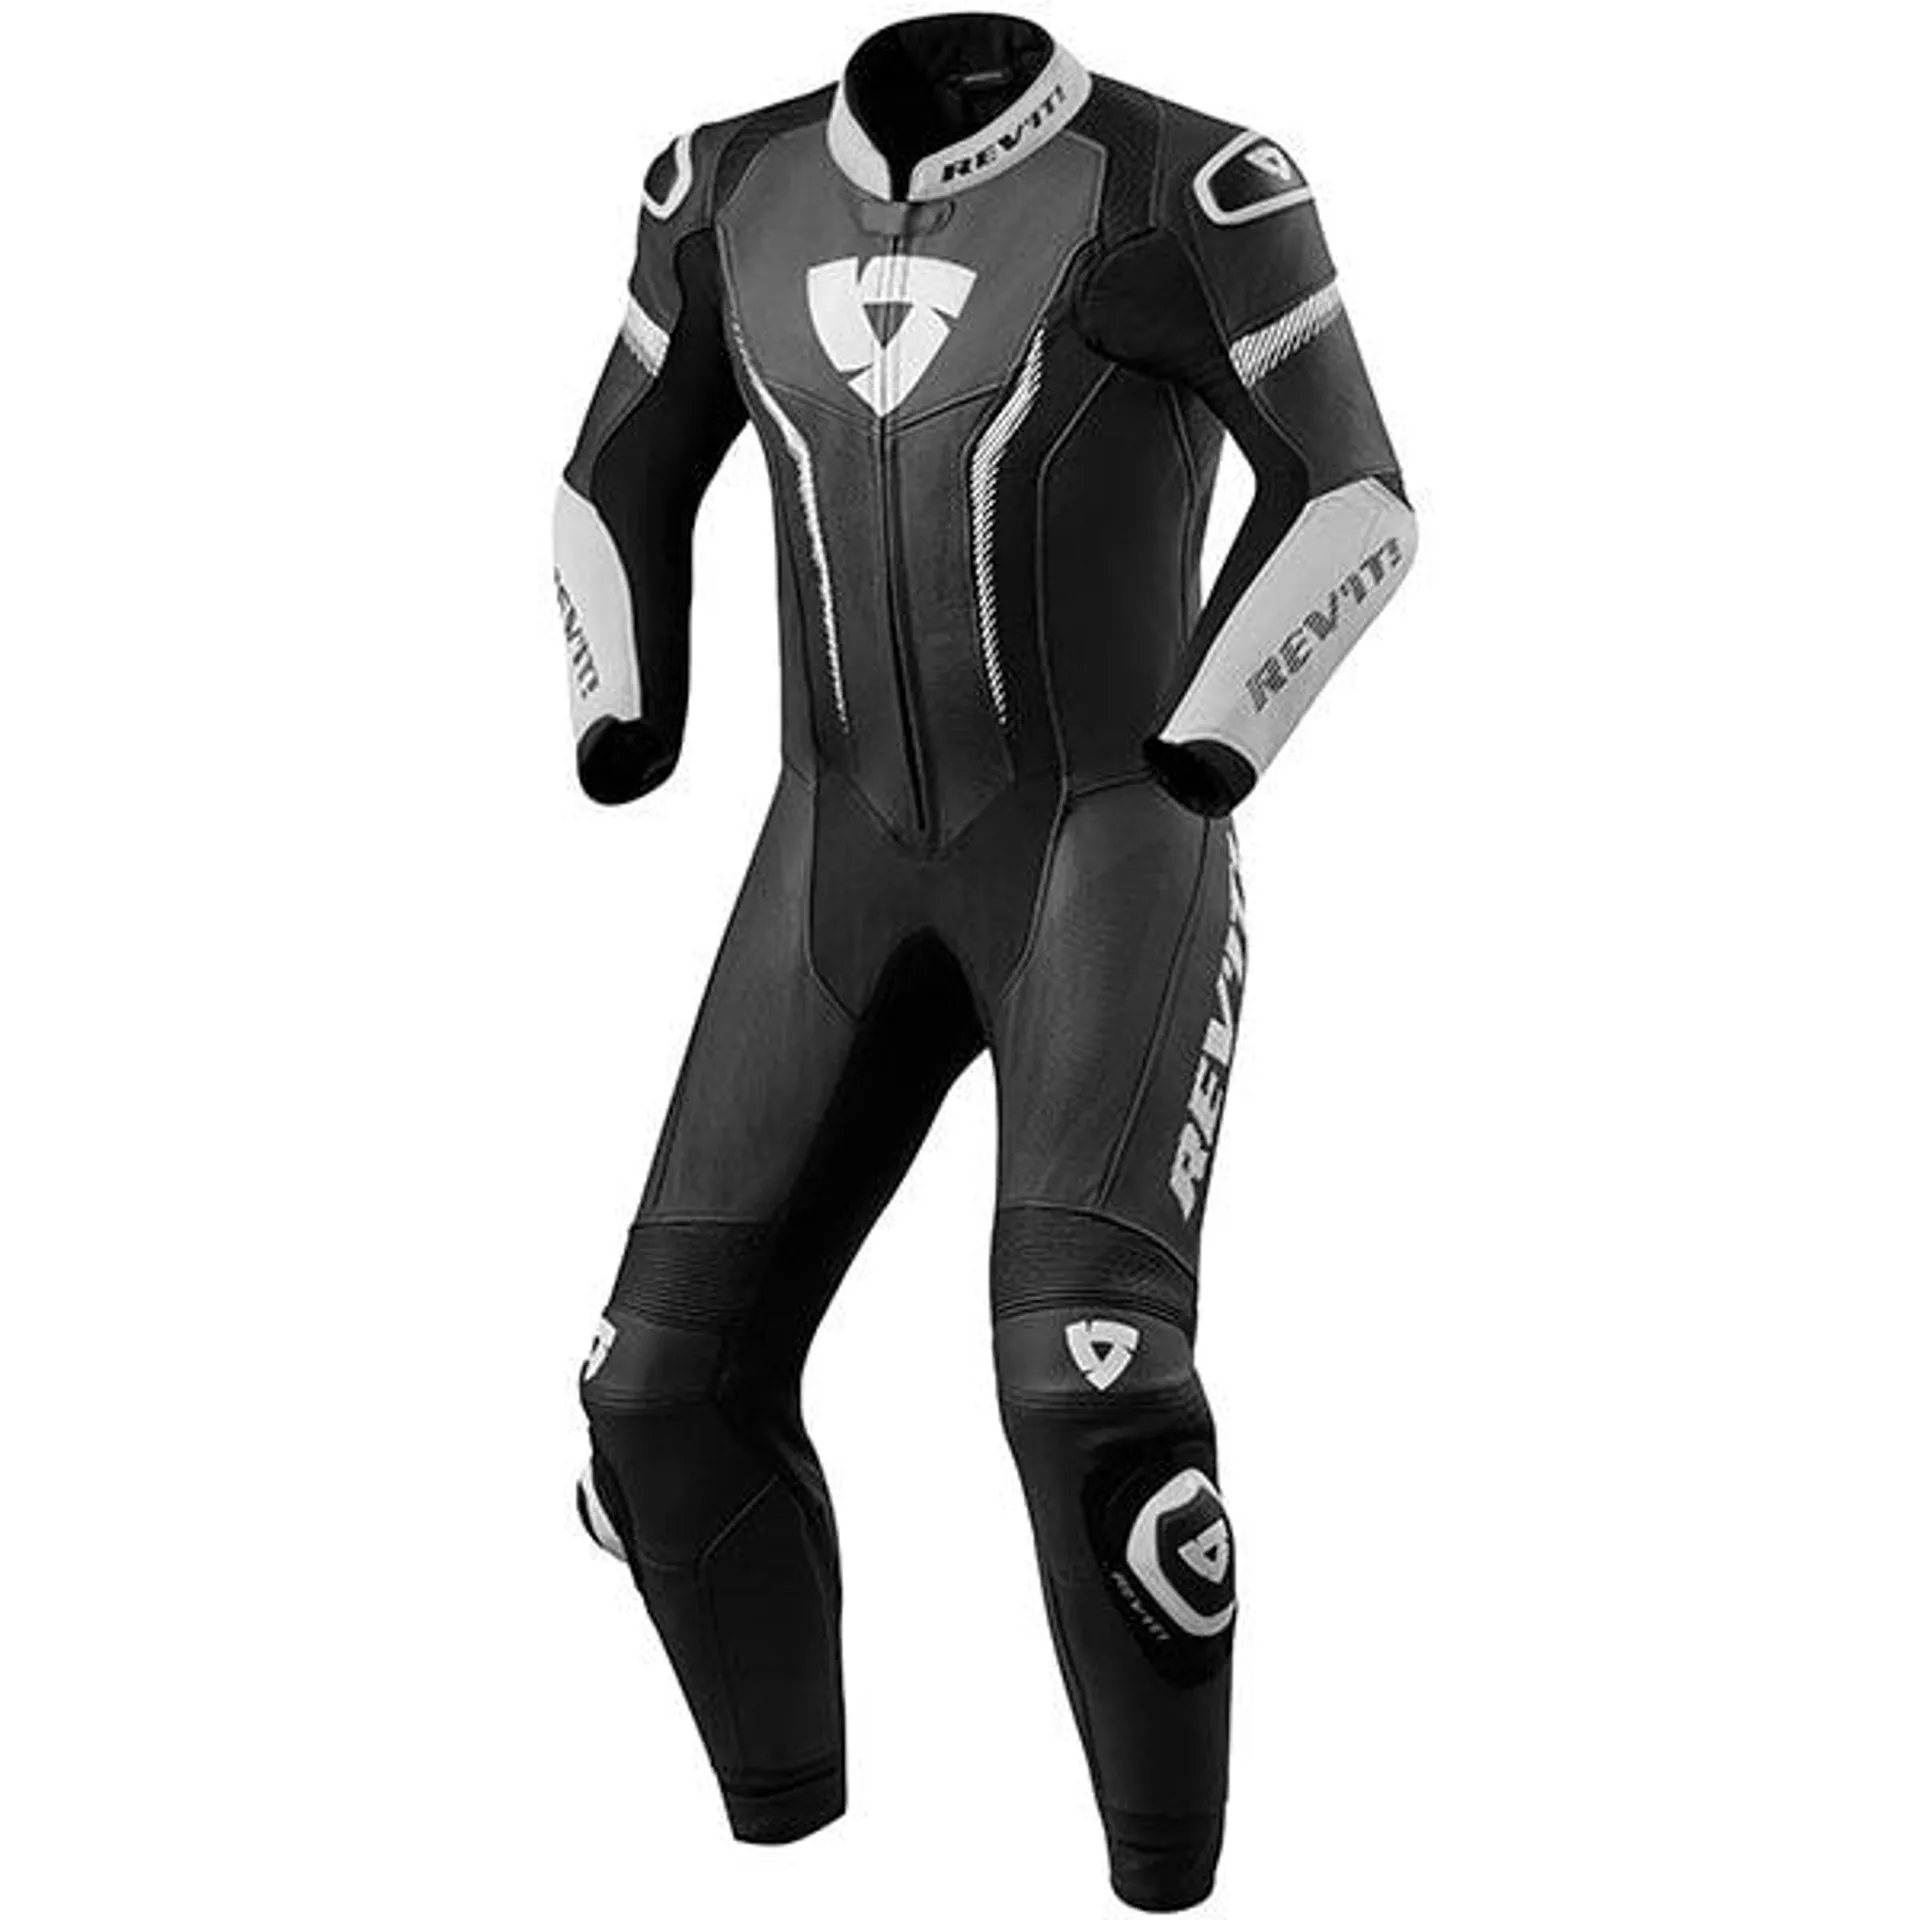 Rev'it Argon 1 Piece Leather Suit - Black / White